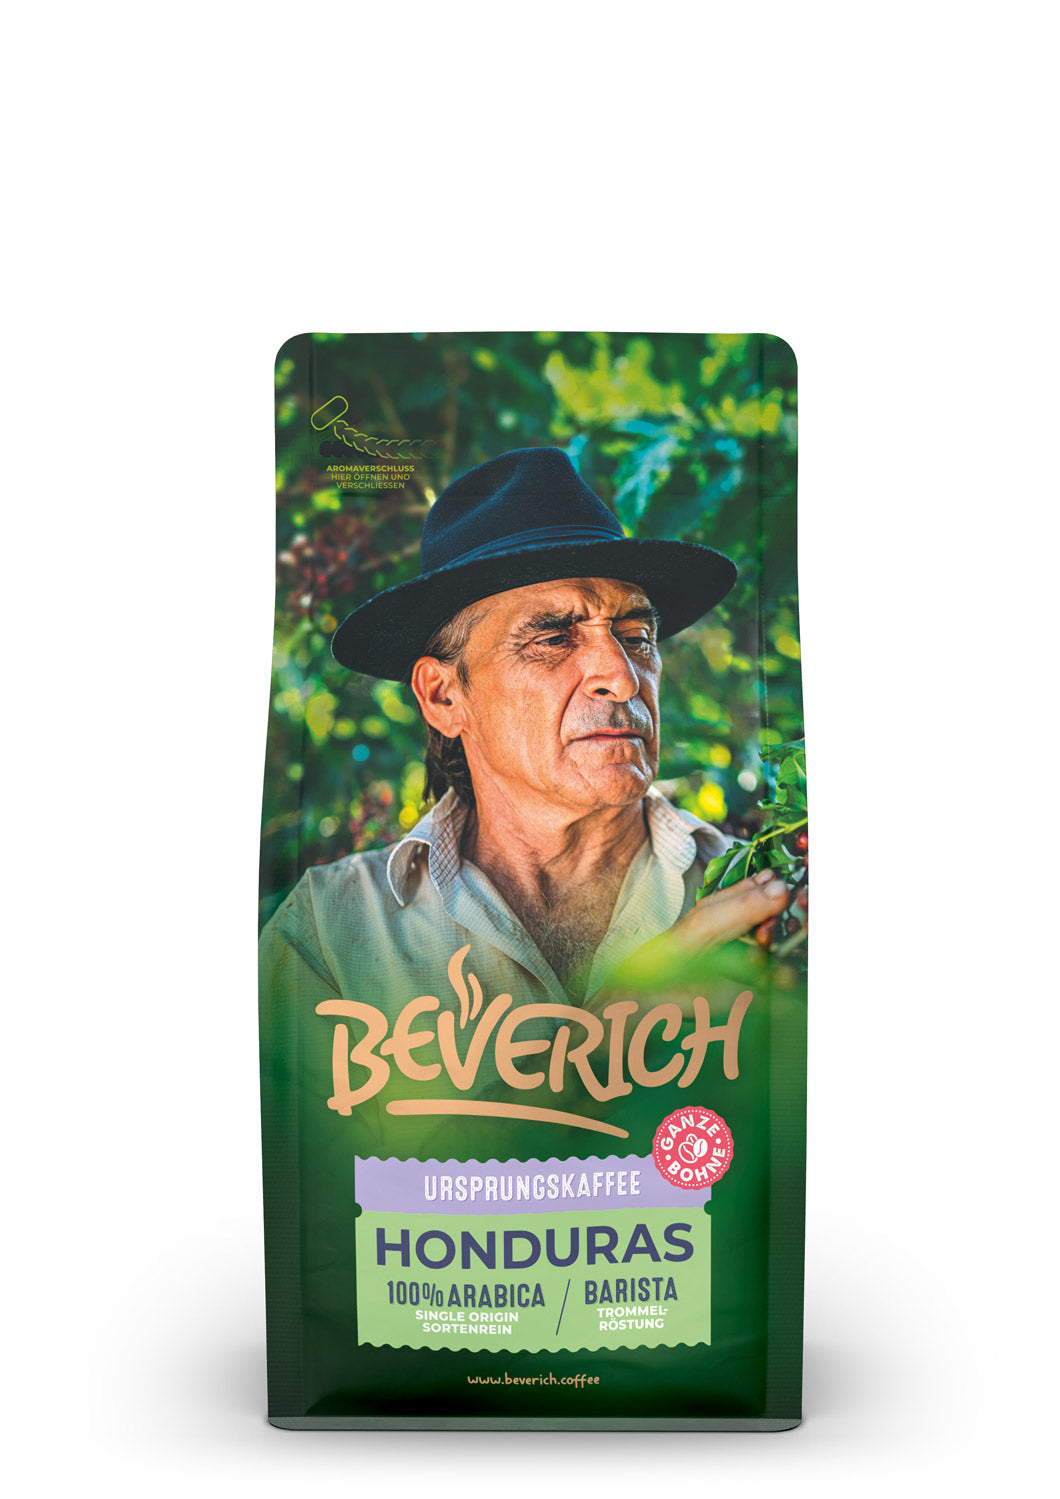 BEVERICH - Ursprungskaffee "Honduras" (250g)